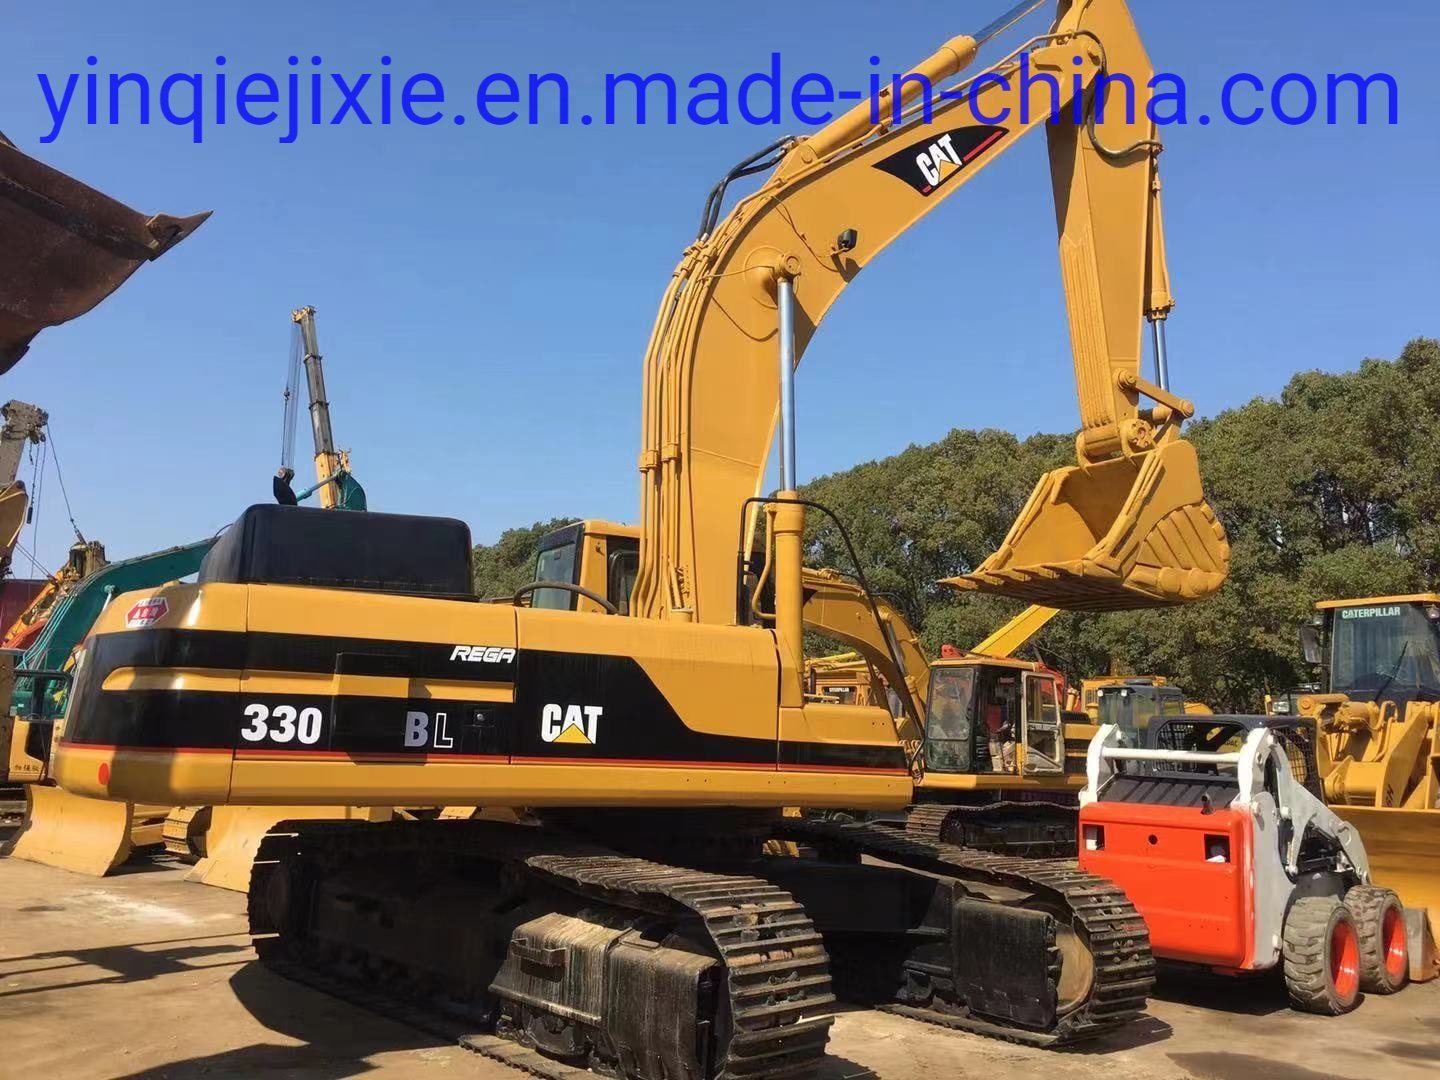 Used Cat330bl Excavator, Hydraulic Excavator